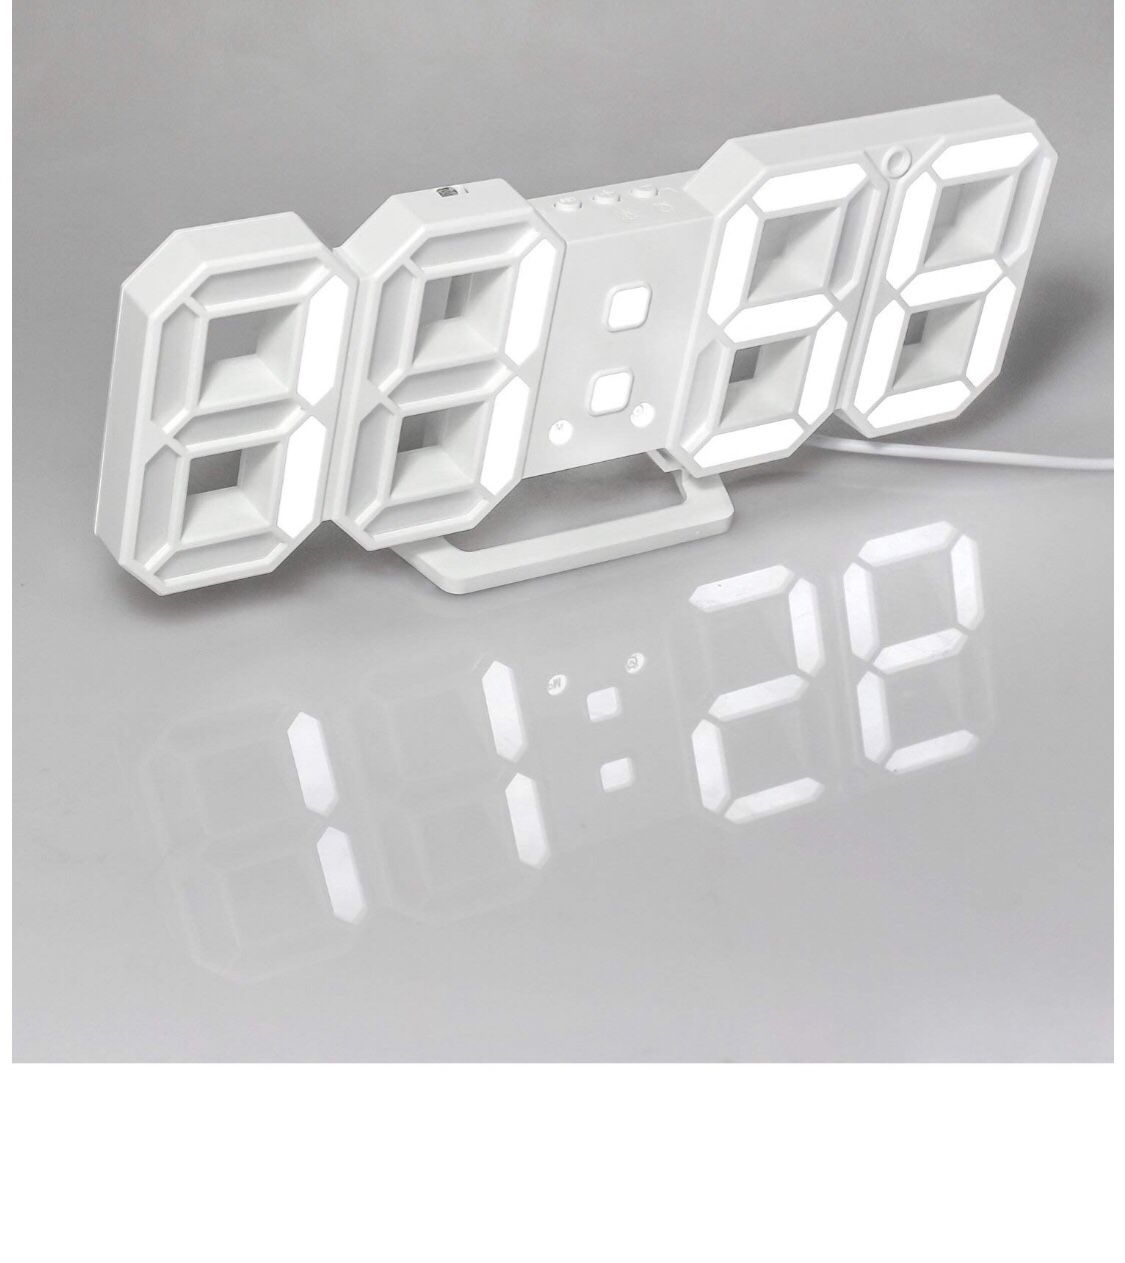 LCD 3D Digital Alarm Clock Wall Clock